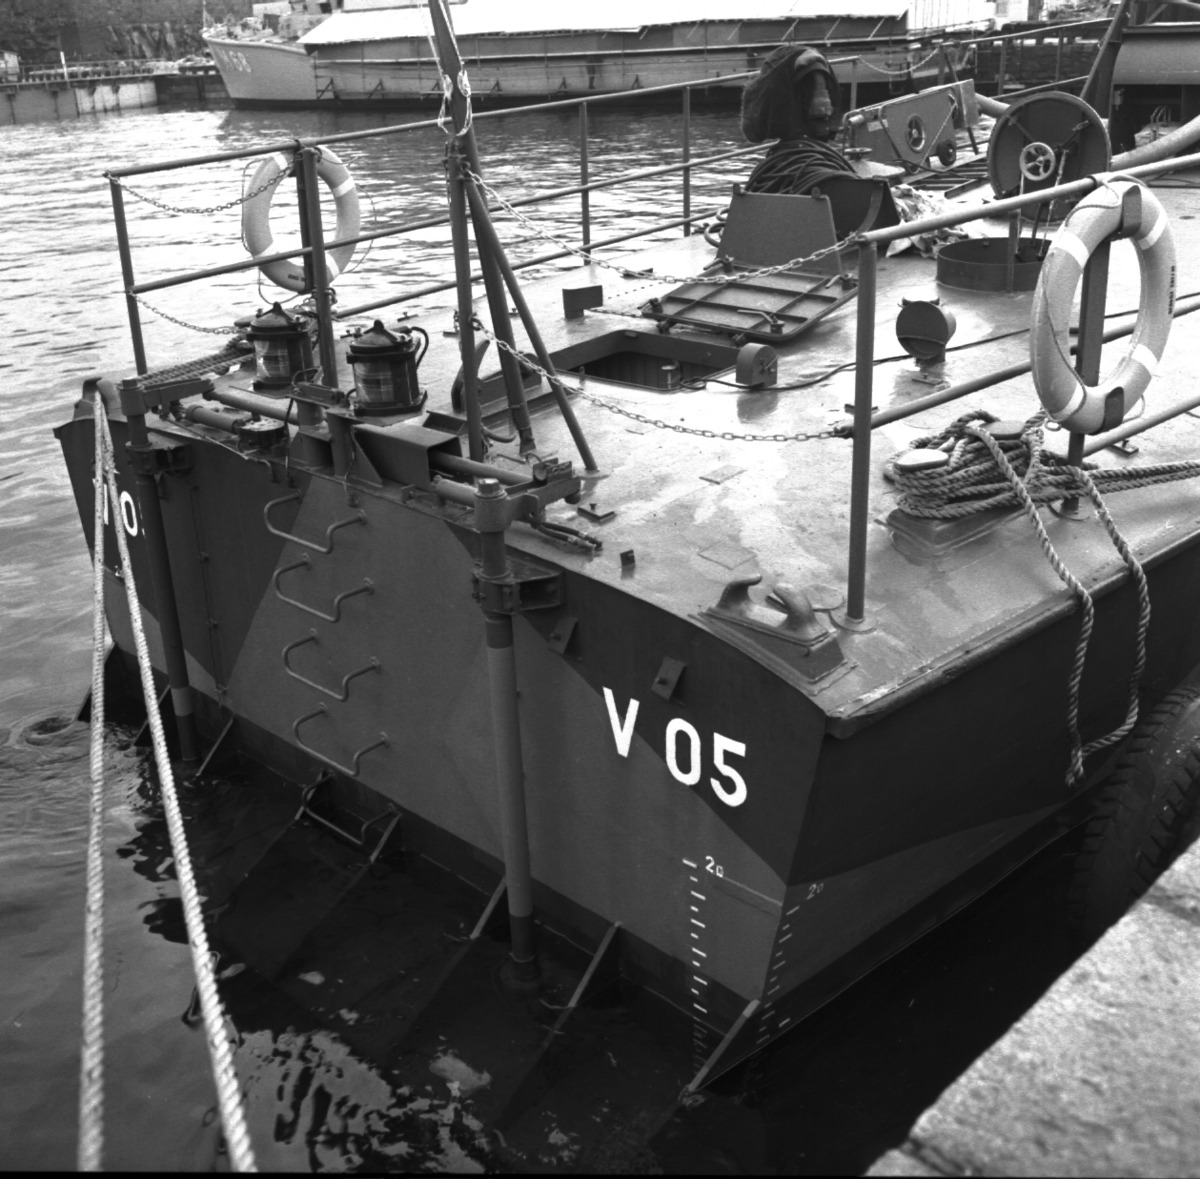 V 05
Interiörer och exteriörer av vedettbåten V 05\\\\anm. neg ingnår i en serie om 51 st varav 5 st scannats. Detta är nr V 91577/gp